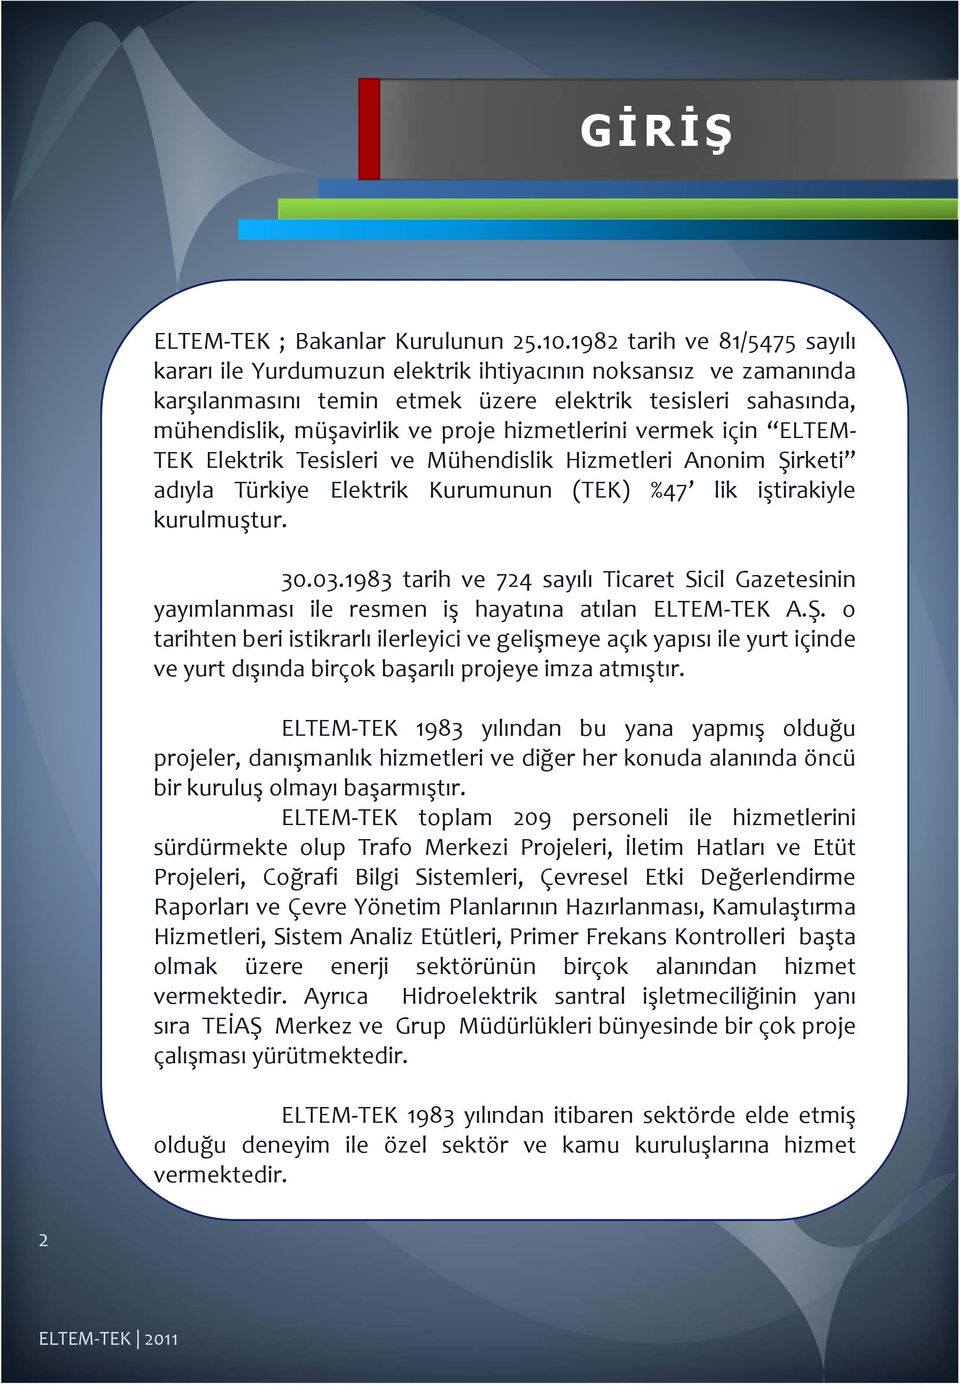 hizmetlerini vermek için ELTEM TEK Elektrik Tesisleri ve Mühendislik Hizmetleri Anonim Şirketi adıyla Türkiye Elektrik Kurumunun (TEK) %47 lik iştirakiyle kurulmuştur. 30.03.